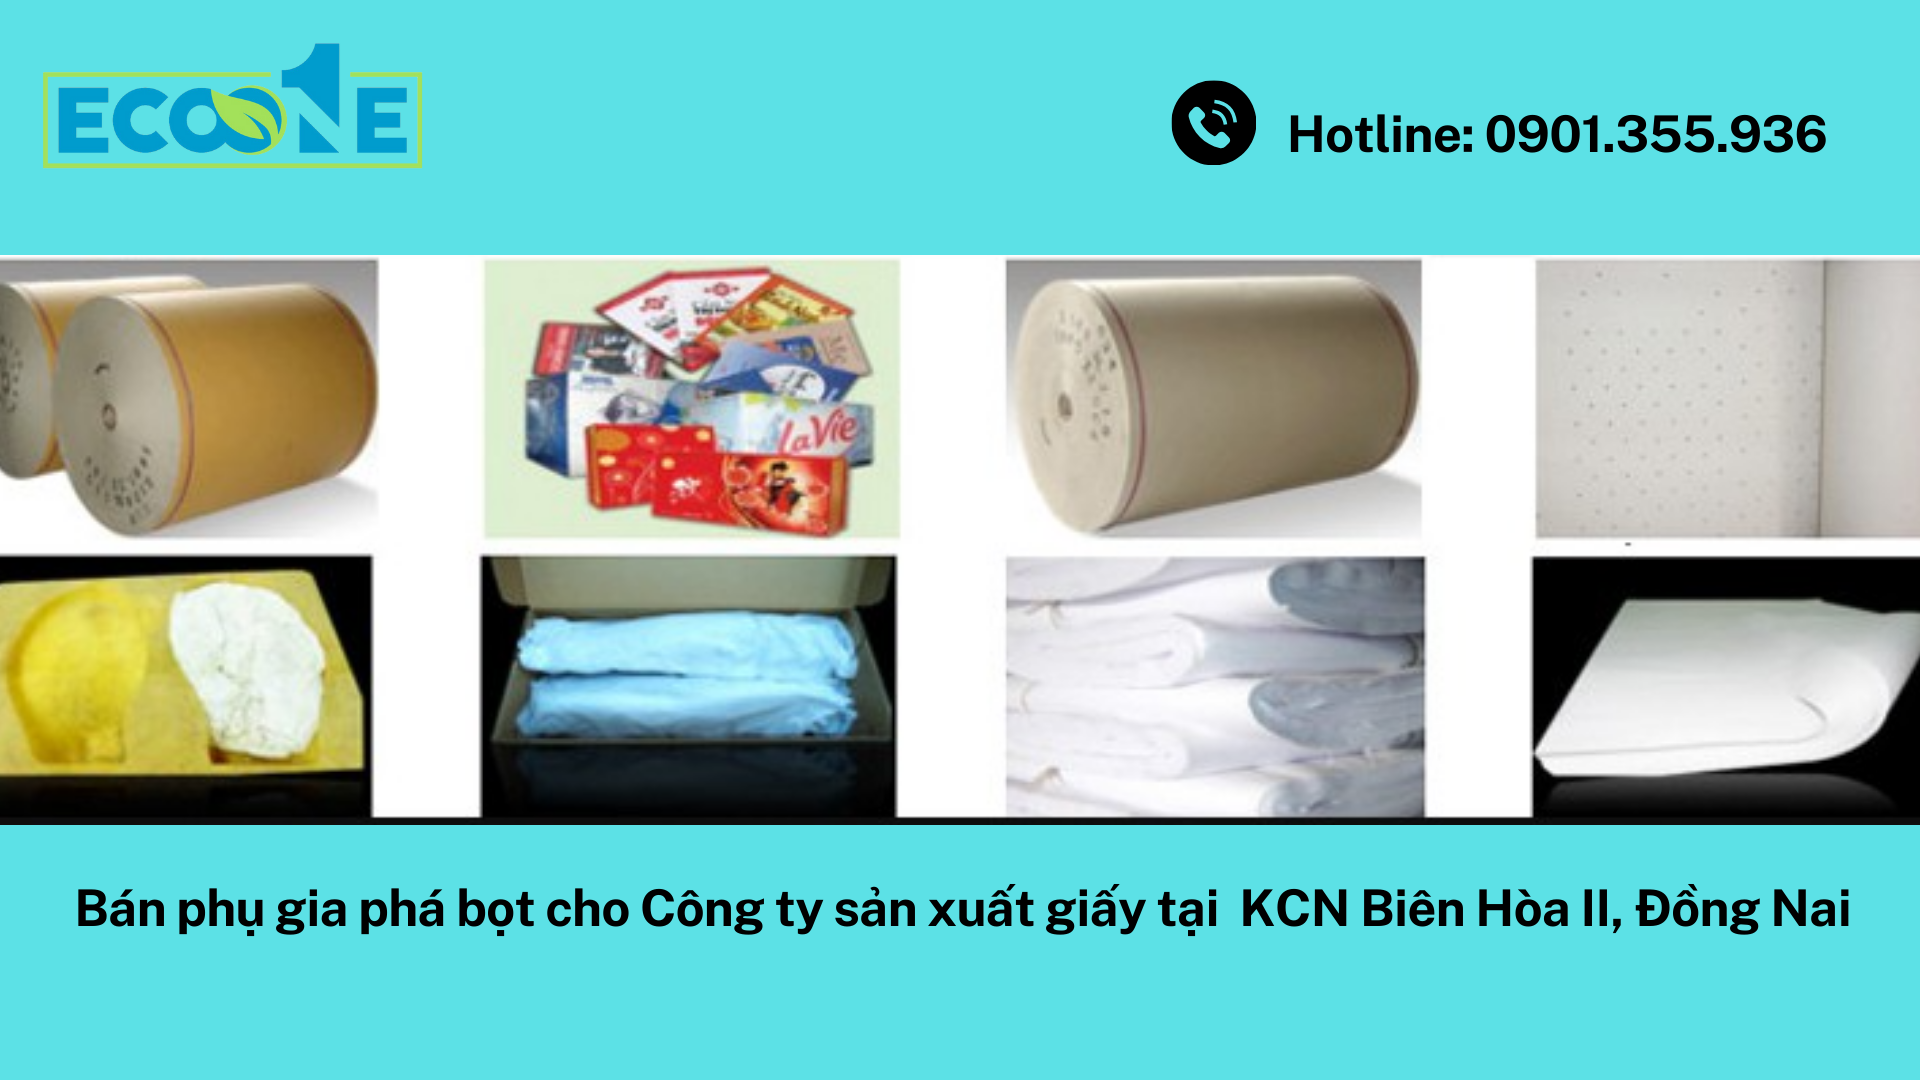 Bán phụ gia phá bọt cho Công ty sản xuất giấy tại KCN Biên Hòa II, Đồng Nai